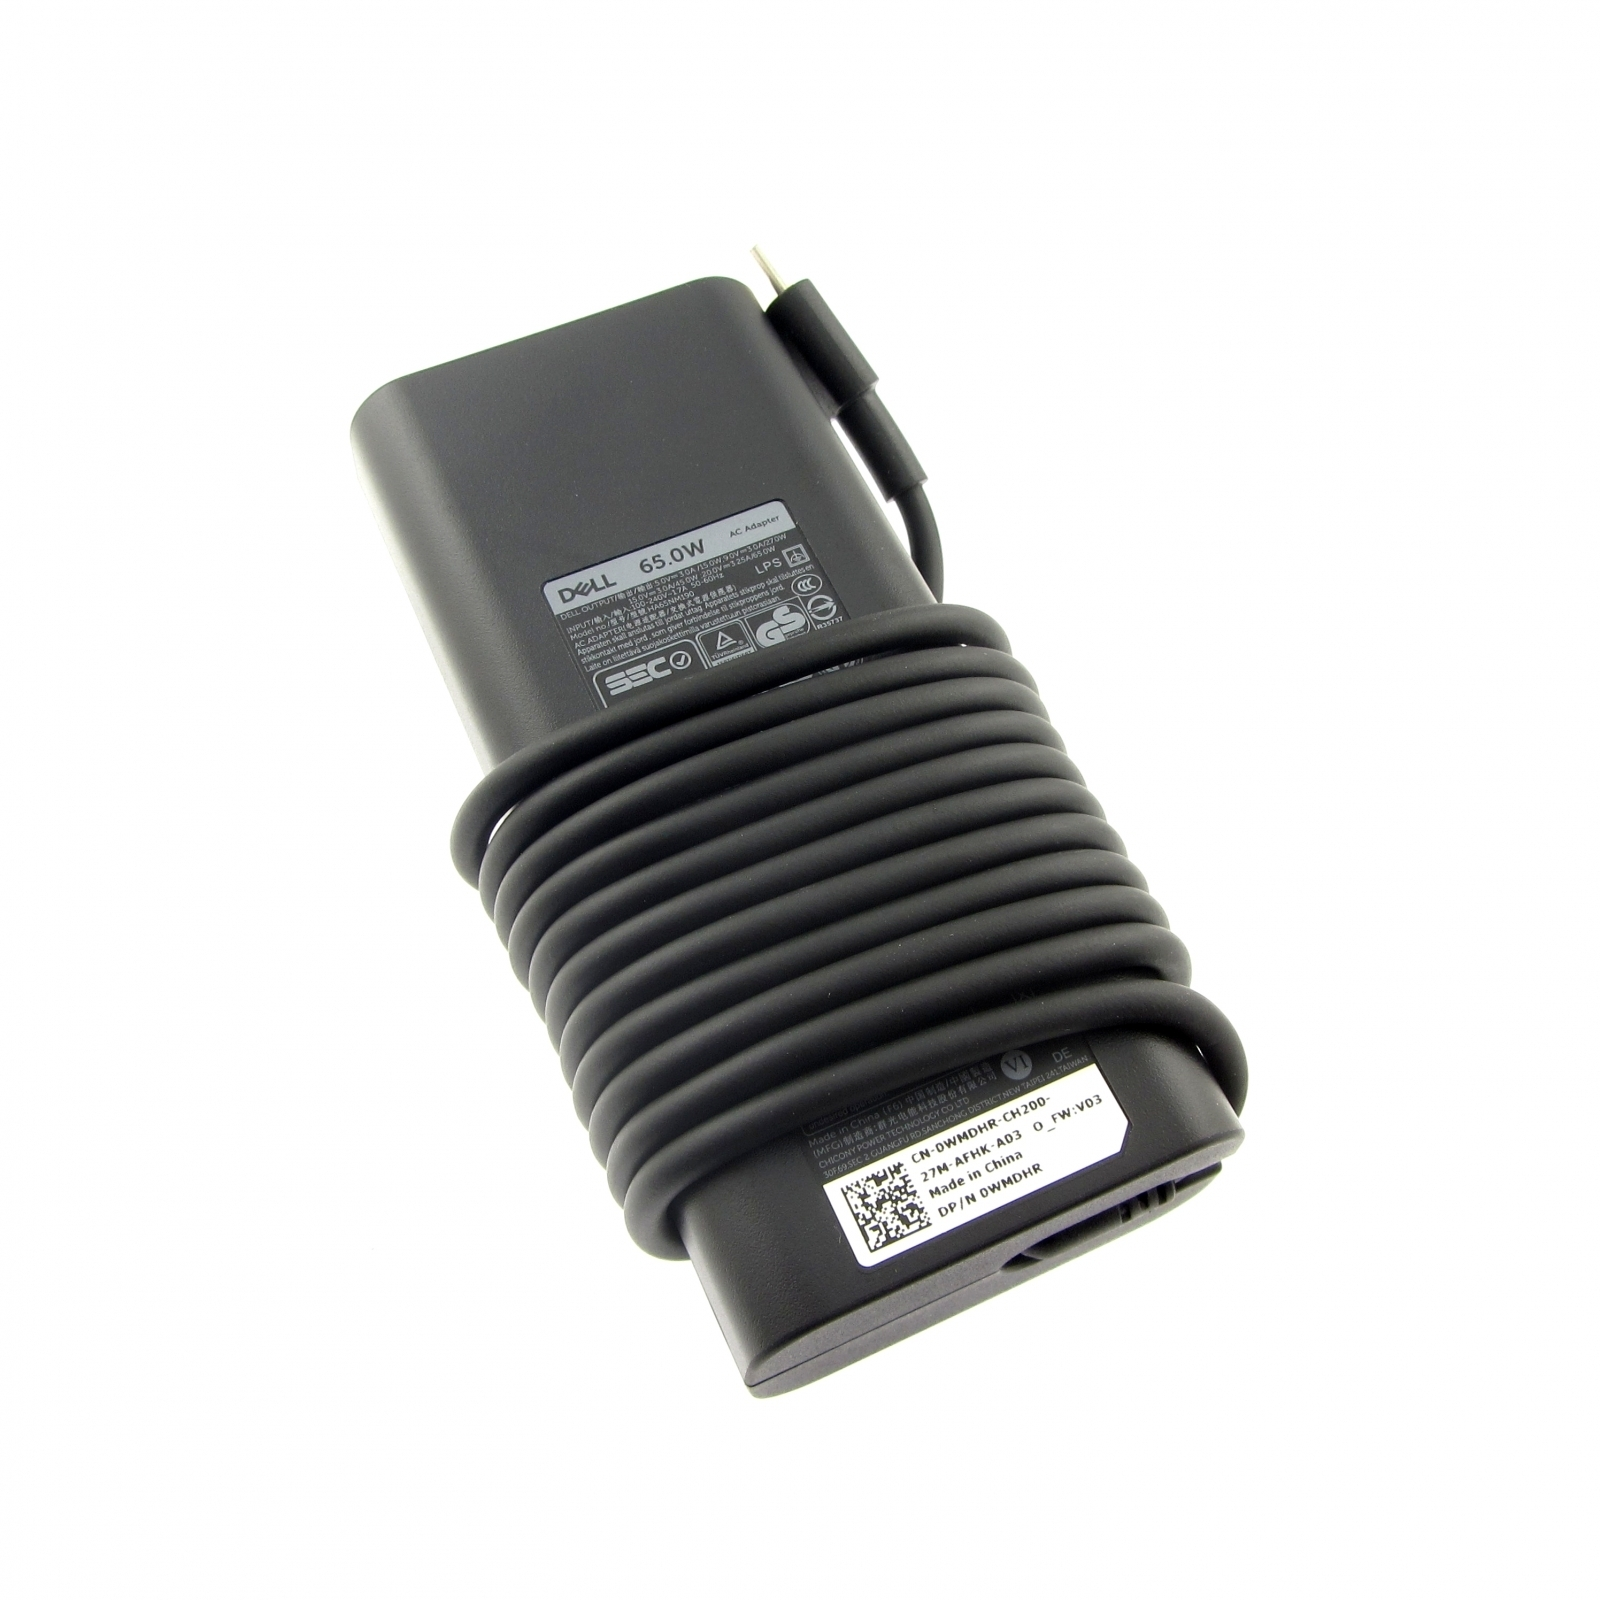 DELL Inspiron 14 (7490) original USB-C Watt, Stecker 65 USB-C Watt Netzteil Notebook-Netzteil 65